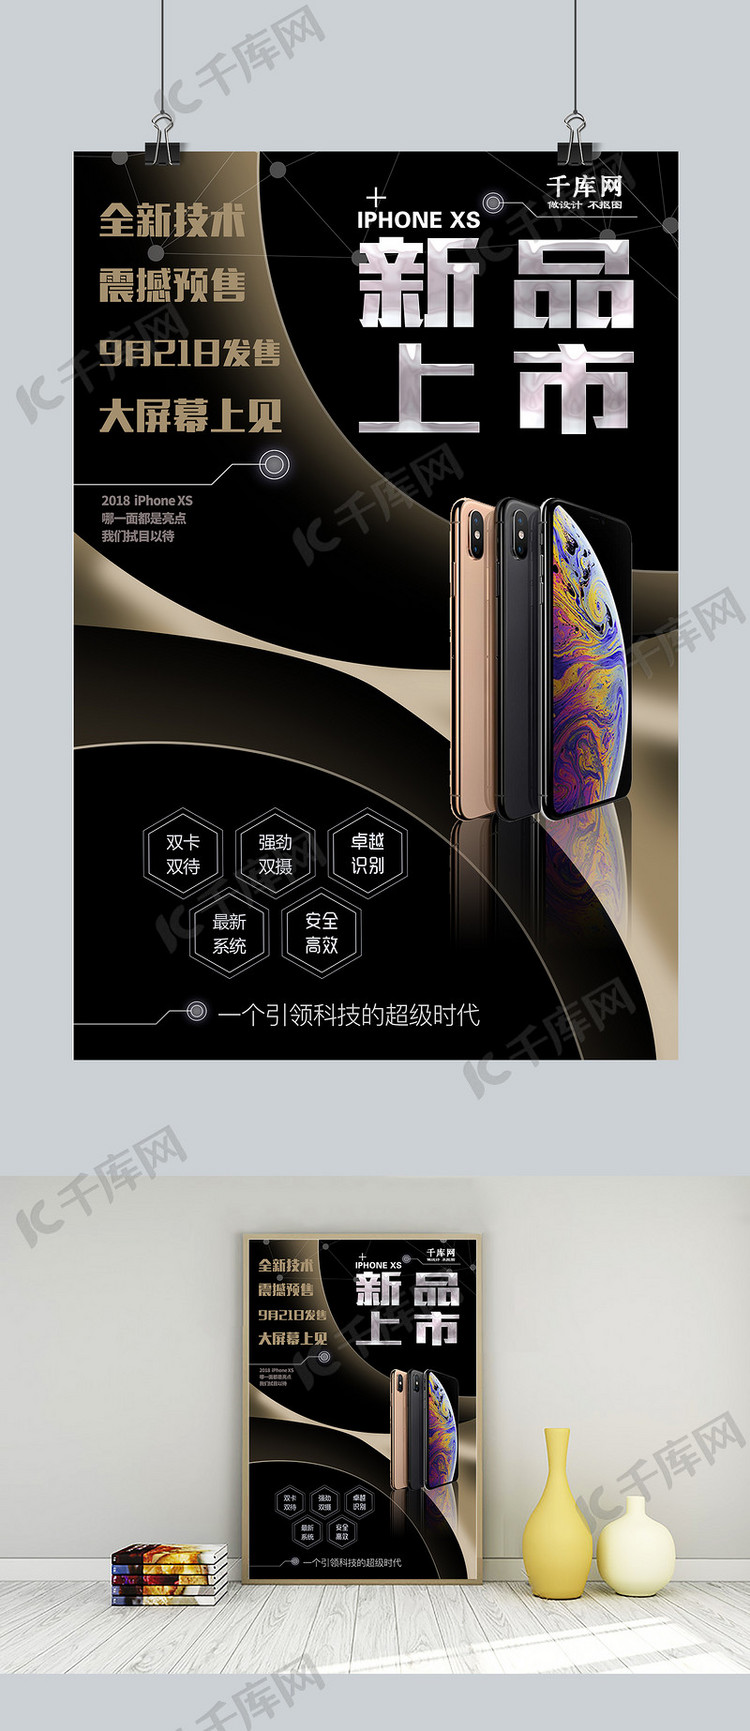 2018iPhoneXS全新技术震撼预售宣传海报